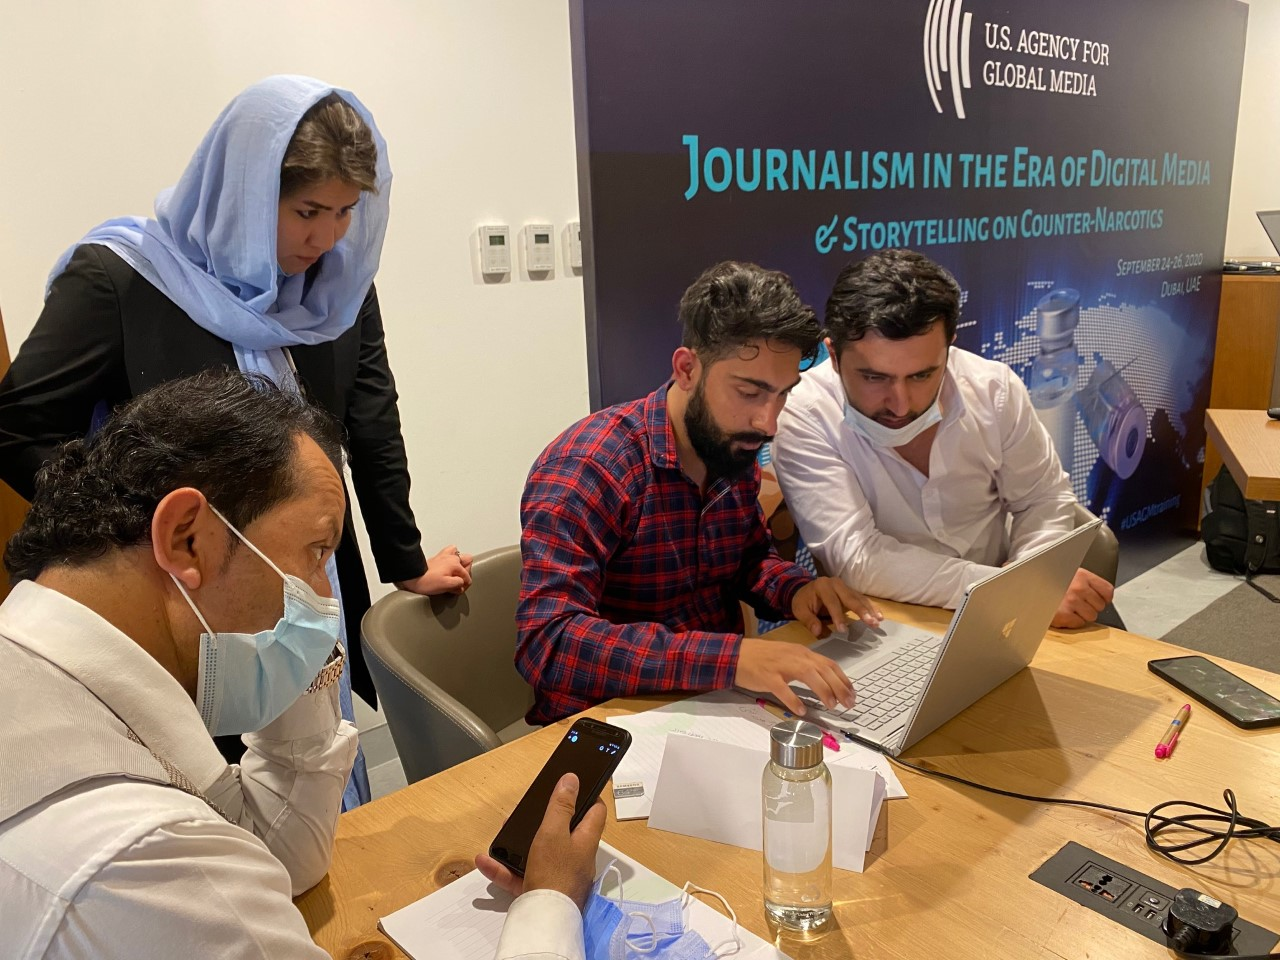 Afghanistan: Journalism in the Era of Digital Media